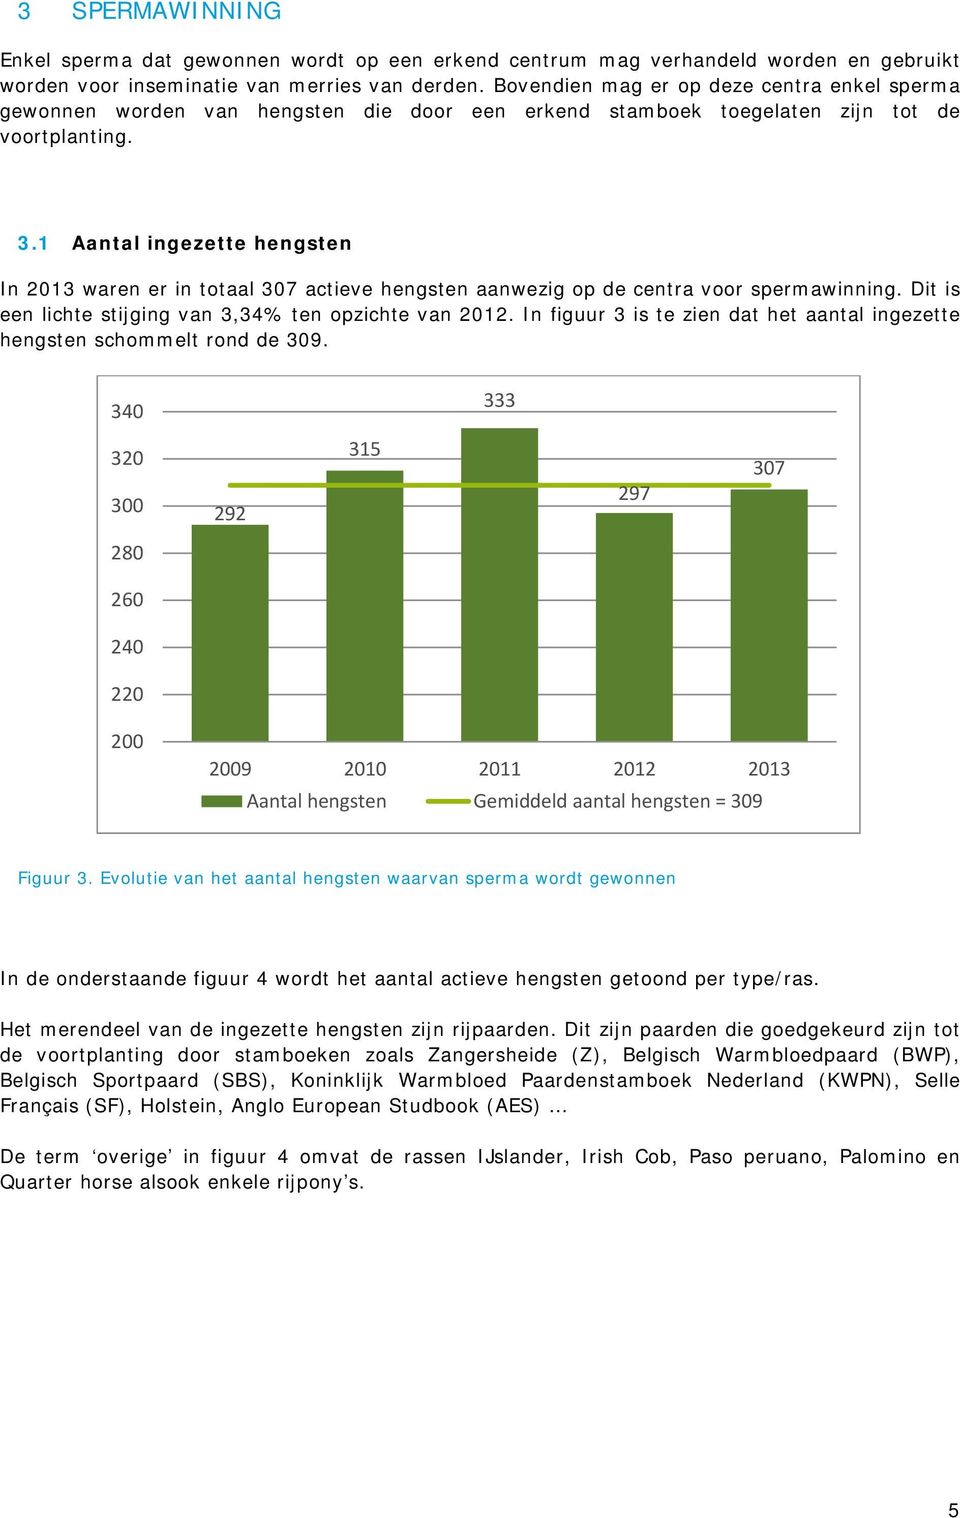 1 Aantal ingezette hengsten In 2013 waren er in totaal 307 actieve hengsten aanwezig op de centra voor spermawinning. Dit is een lichte stijging van 3,34% ten opzichte van 2012.